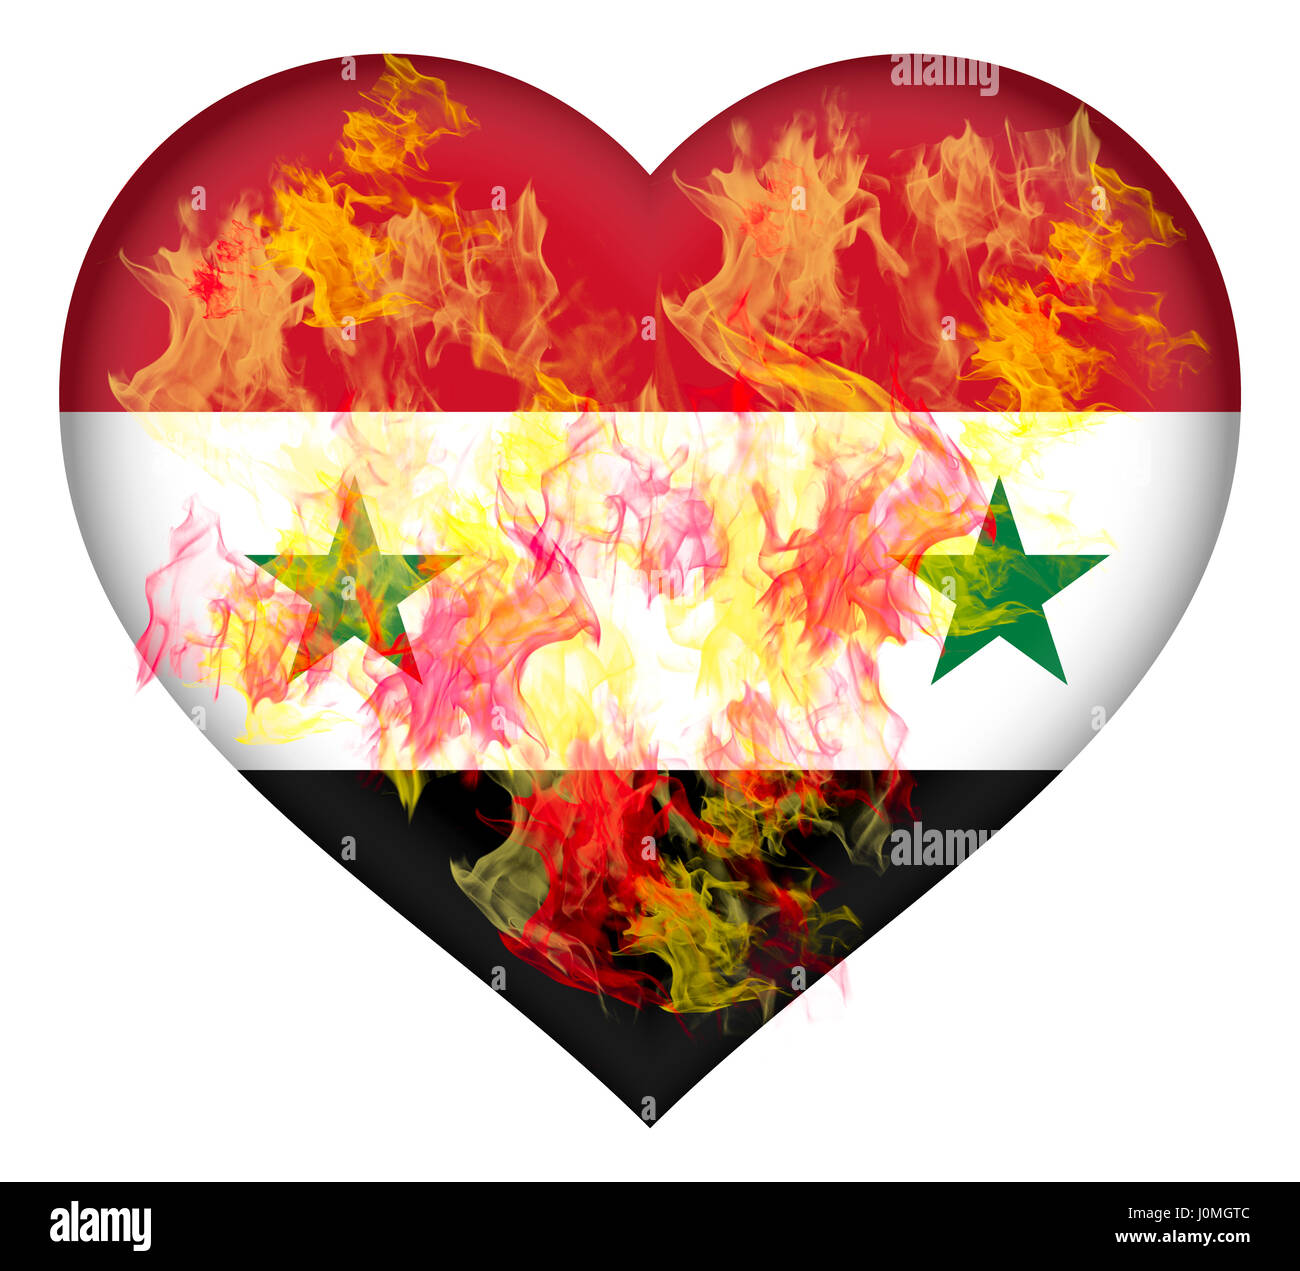 Abbildung der Flagge Syriens geformt wie ein Herz in Flammen Stockfoto